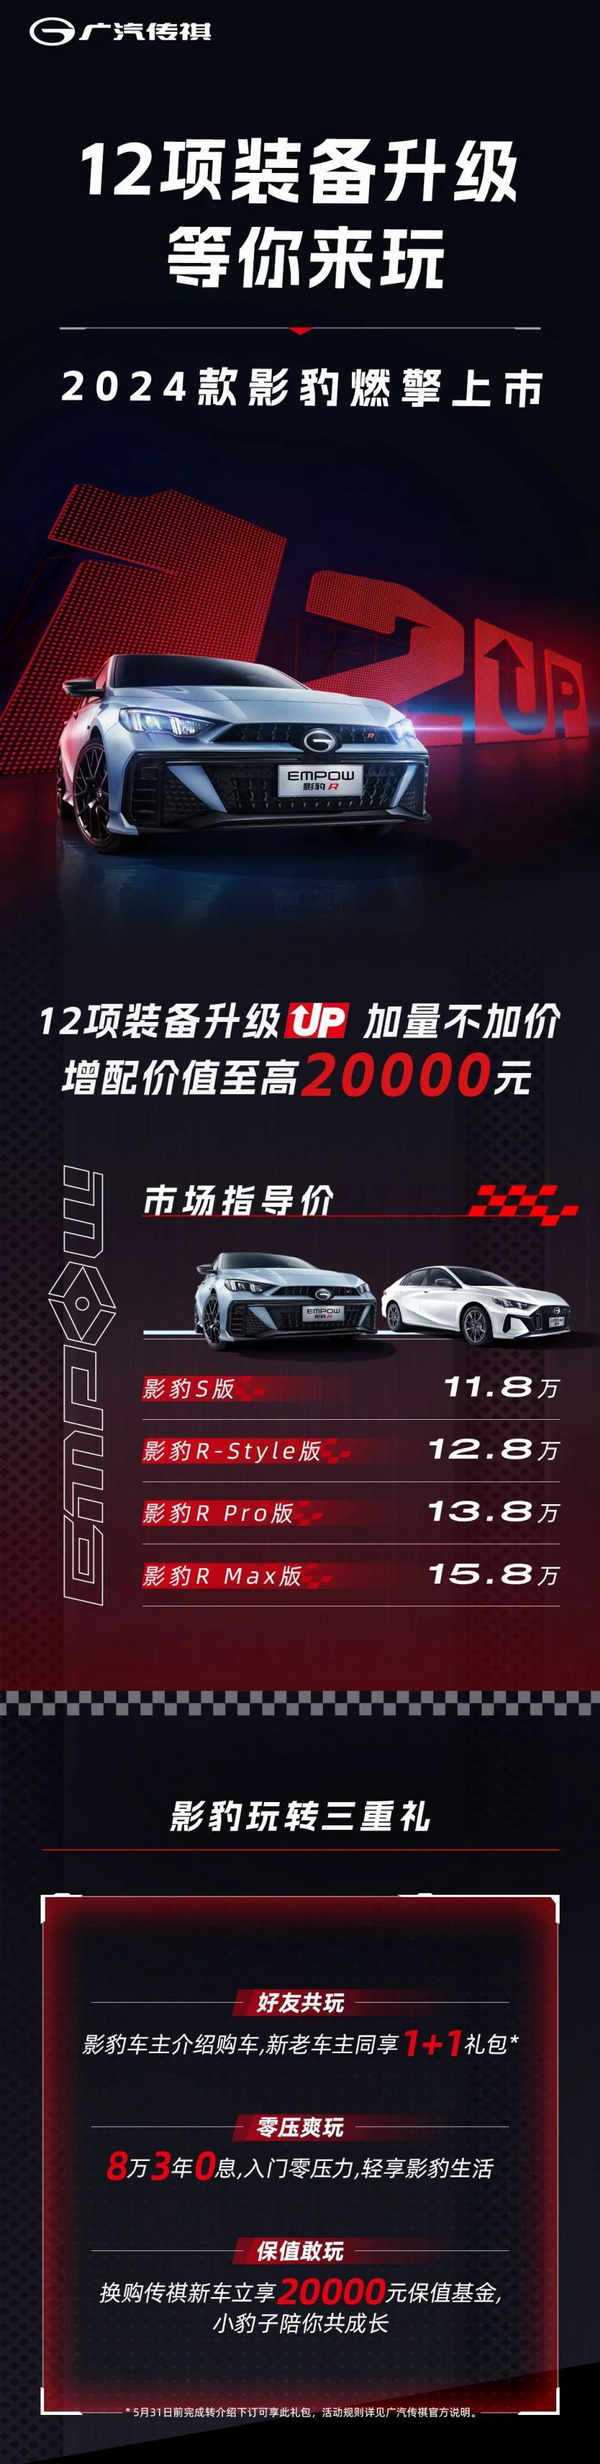 2024款影豹近日上市 四款车型售11.80-15.80万元